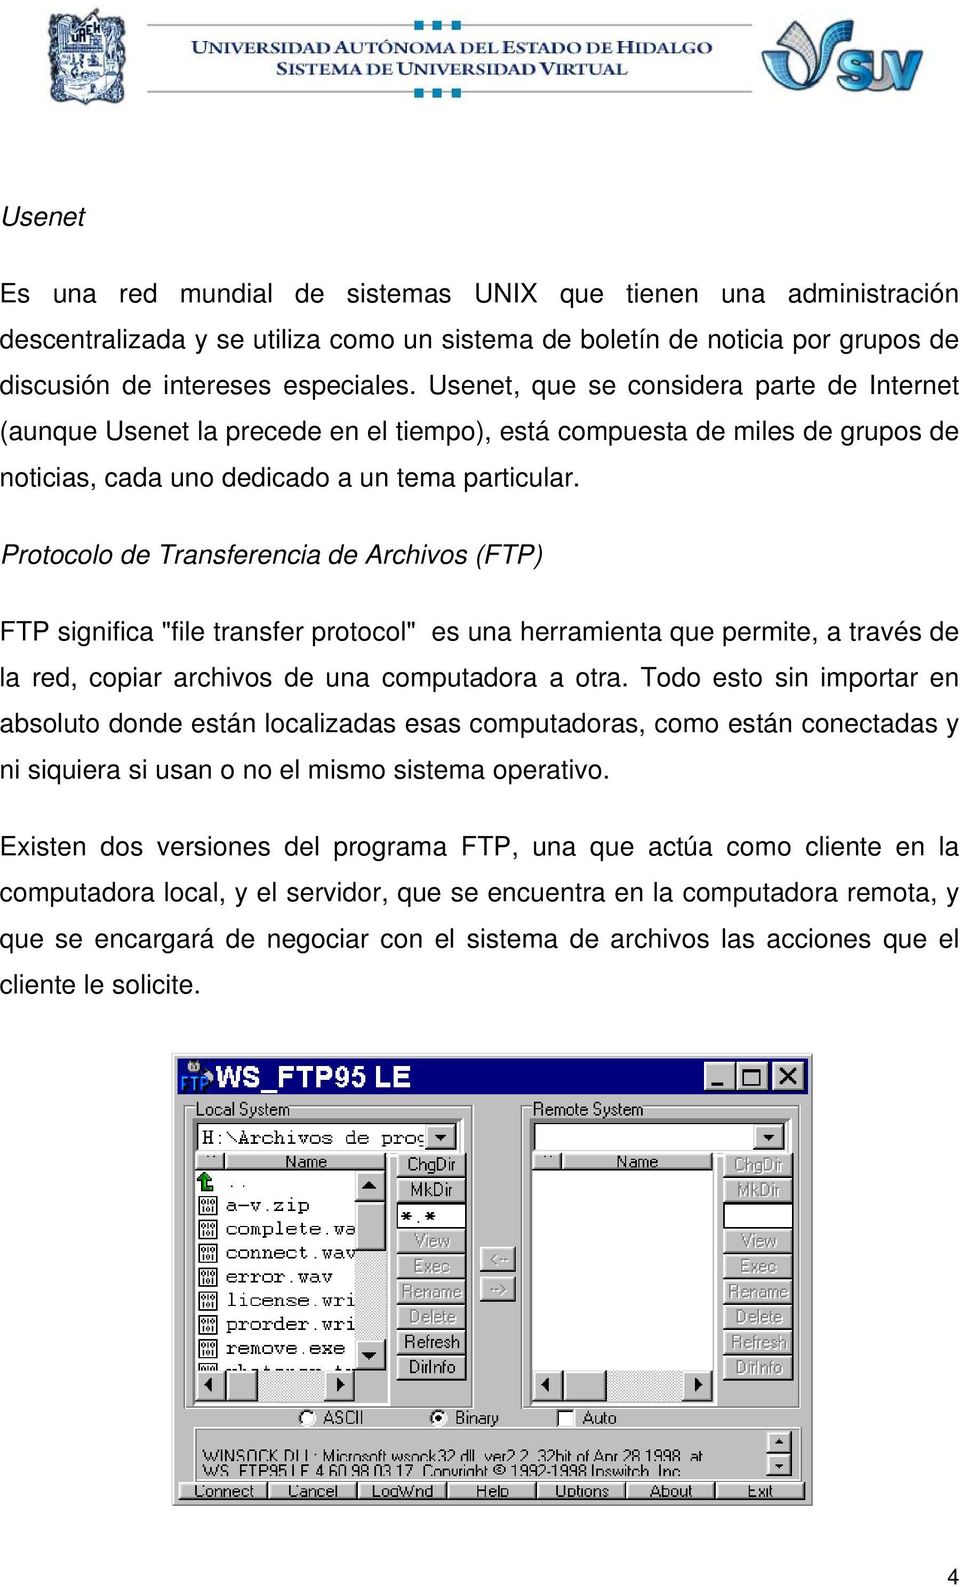 Protocolo de Transferencia de Archivos (FTP) FTP significa "file transfer protocol" es una herramienta que permite, a través de la red, copiar archivos de una computadora a otra.